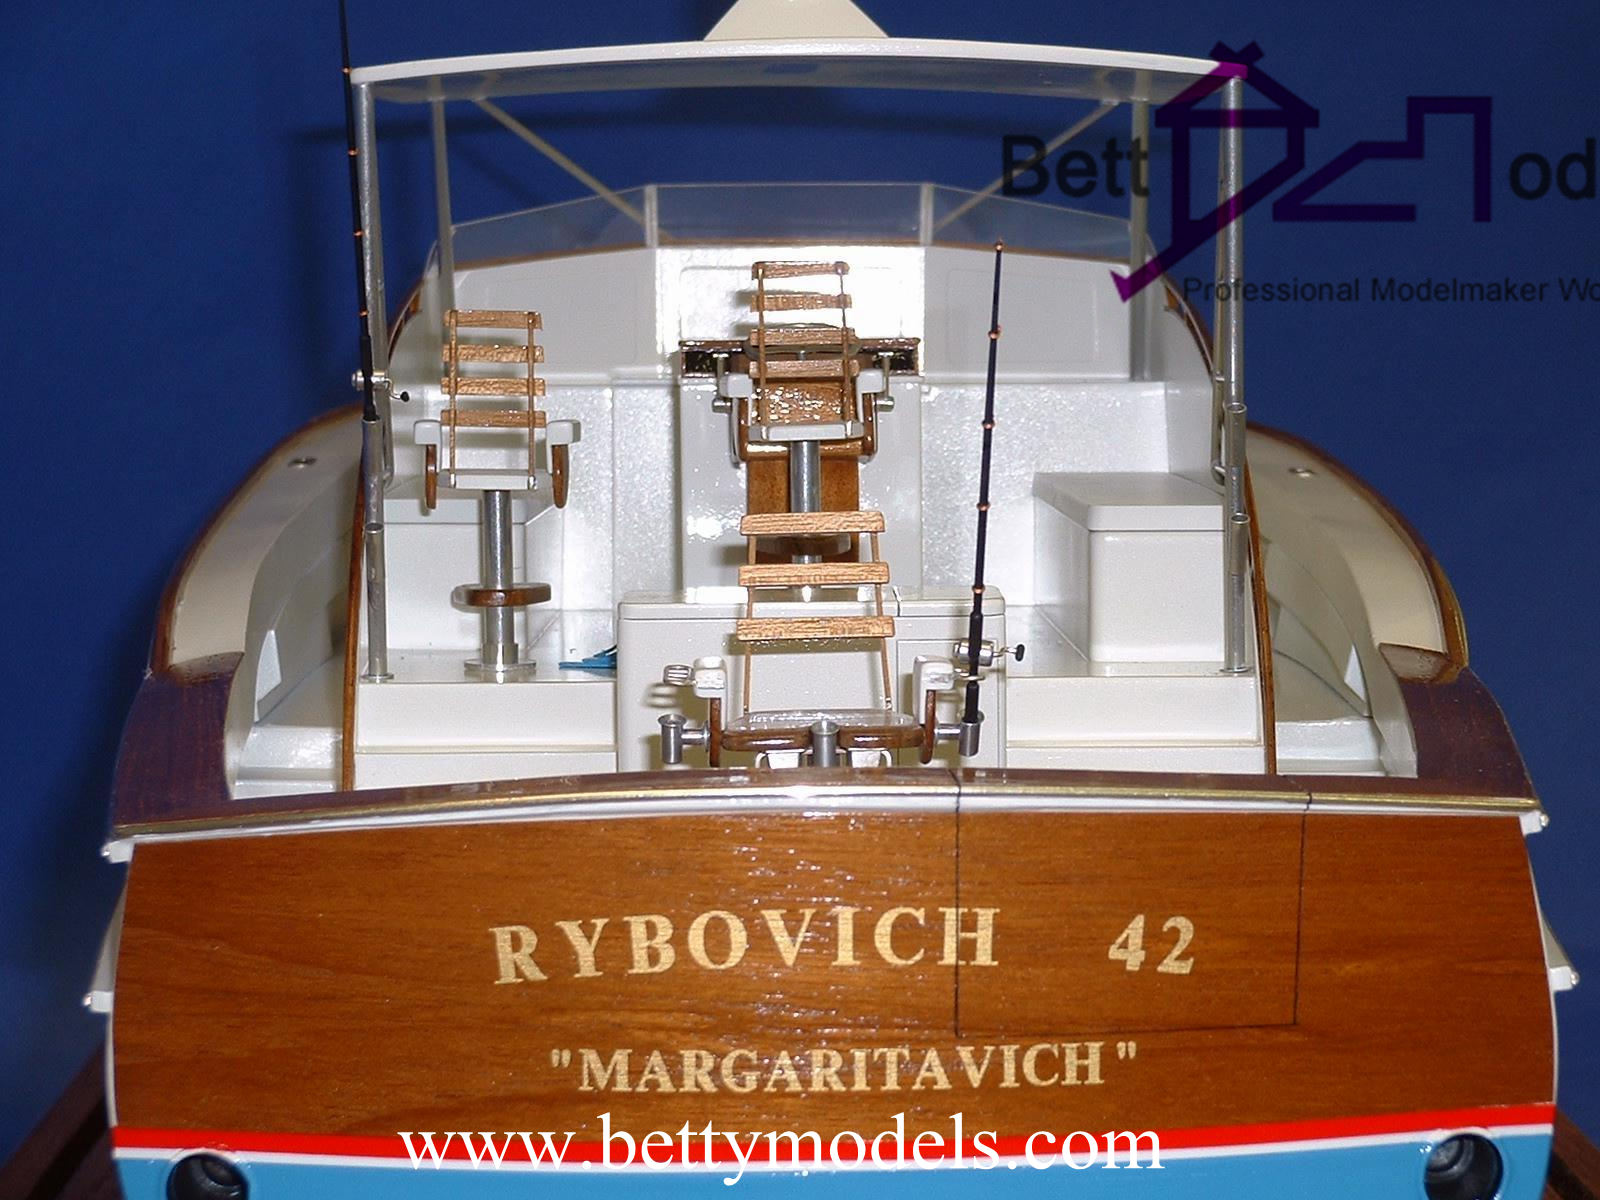 Monaco scale fishing boat models 